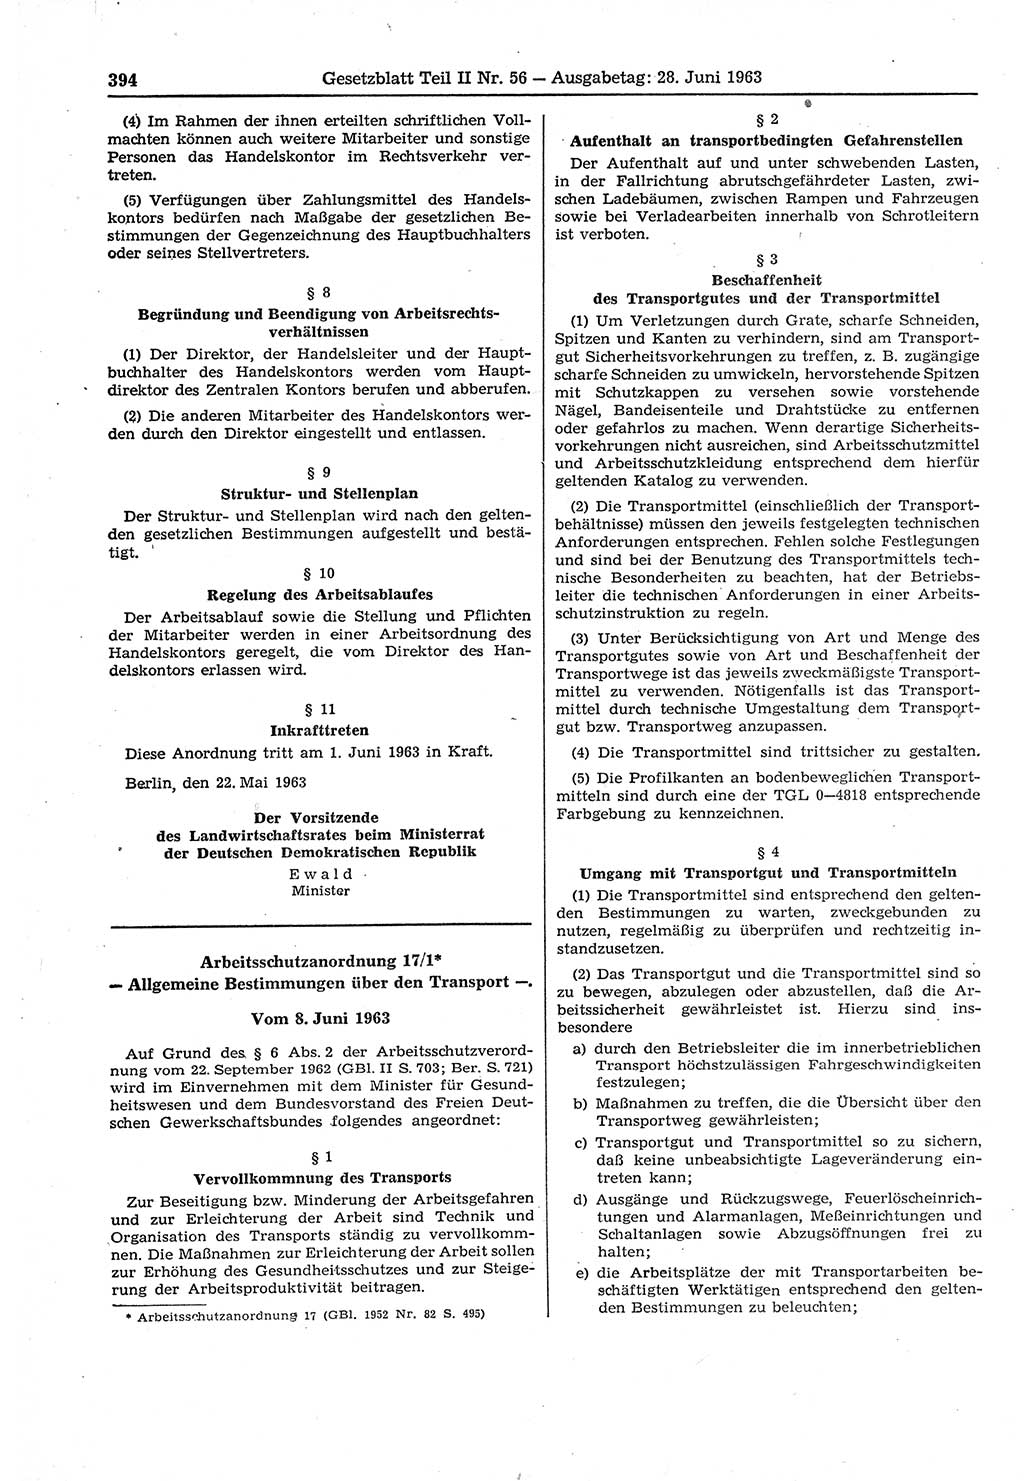 Gesetzblatt (GBl.) der Deutschen Demokratischen Republik (DDR) Teil ⅠⅠ 1963, Seite 394 (GBl. DDR ⅠⅠ 1963, S. 394)